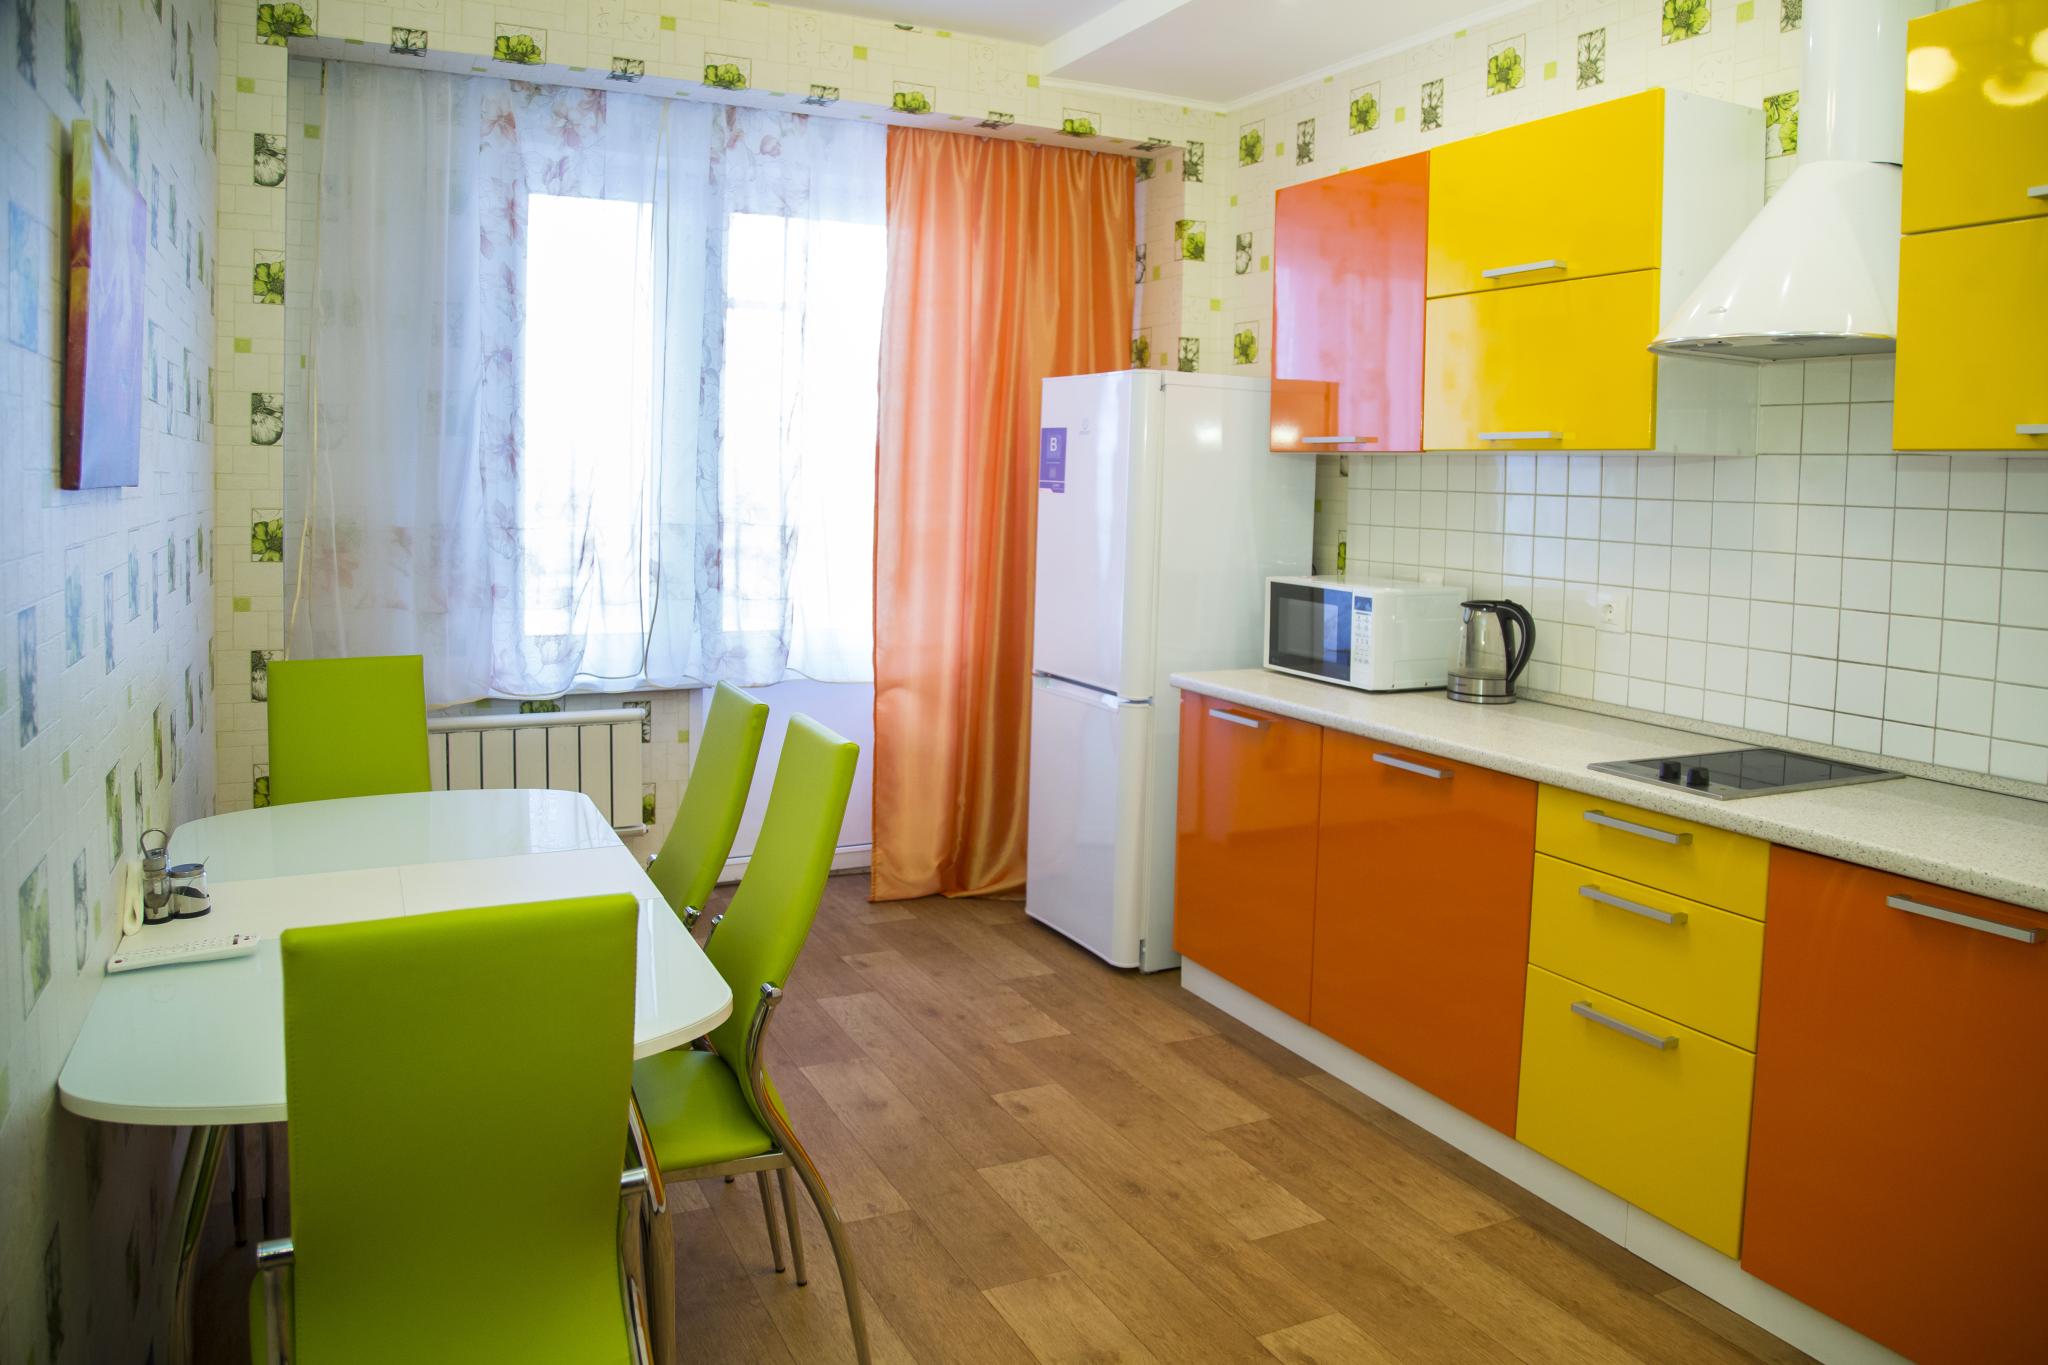 Двухкомнатная квартира в общежитии. Квартиры в максимвльно комфортном для проживания стиле. Красноярск улица Шахтёров 65 стильные кухни. Двухкомнатная квартира Новосибирск зеленая кухня. Двухкомнатная квартира Красноярск.